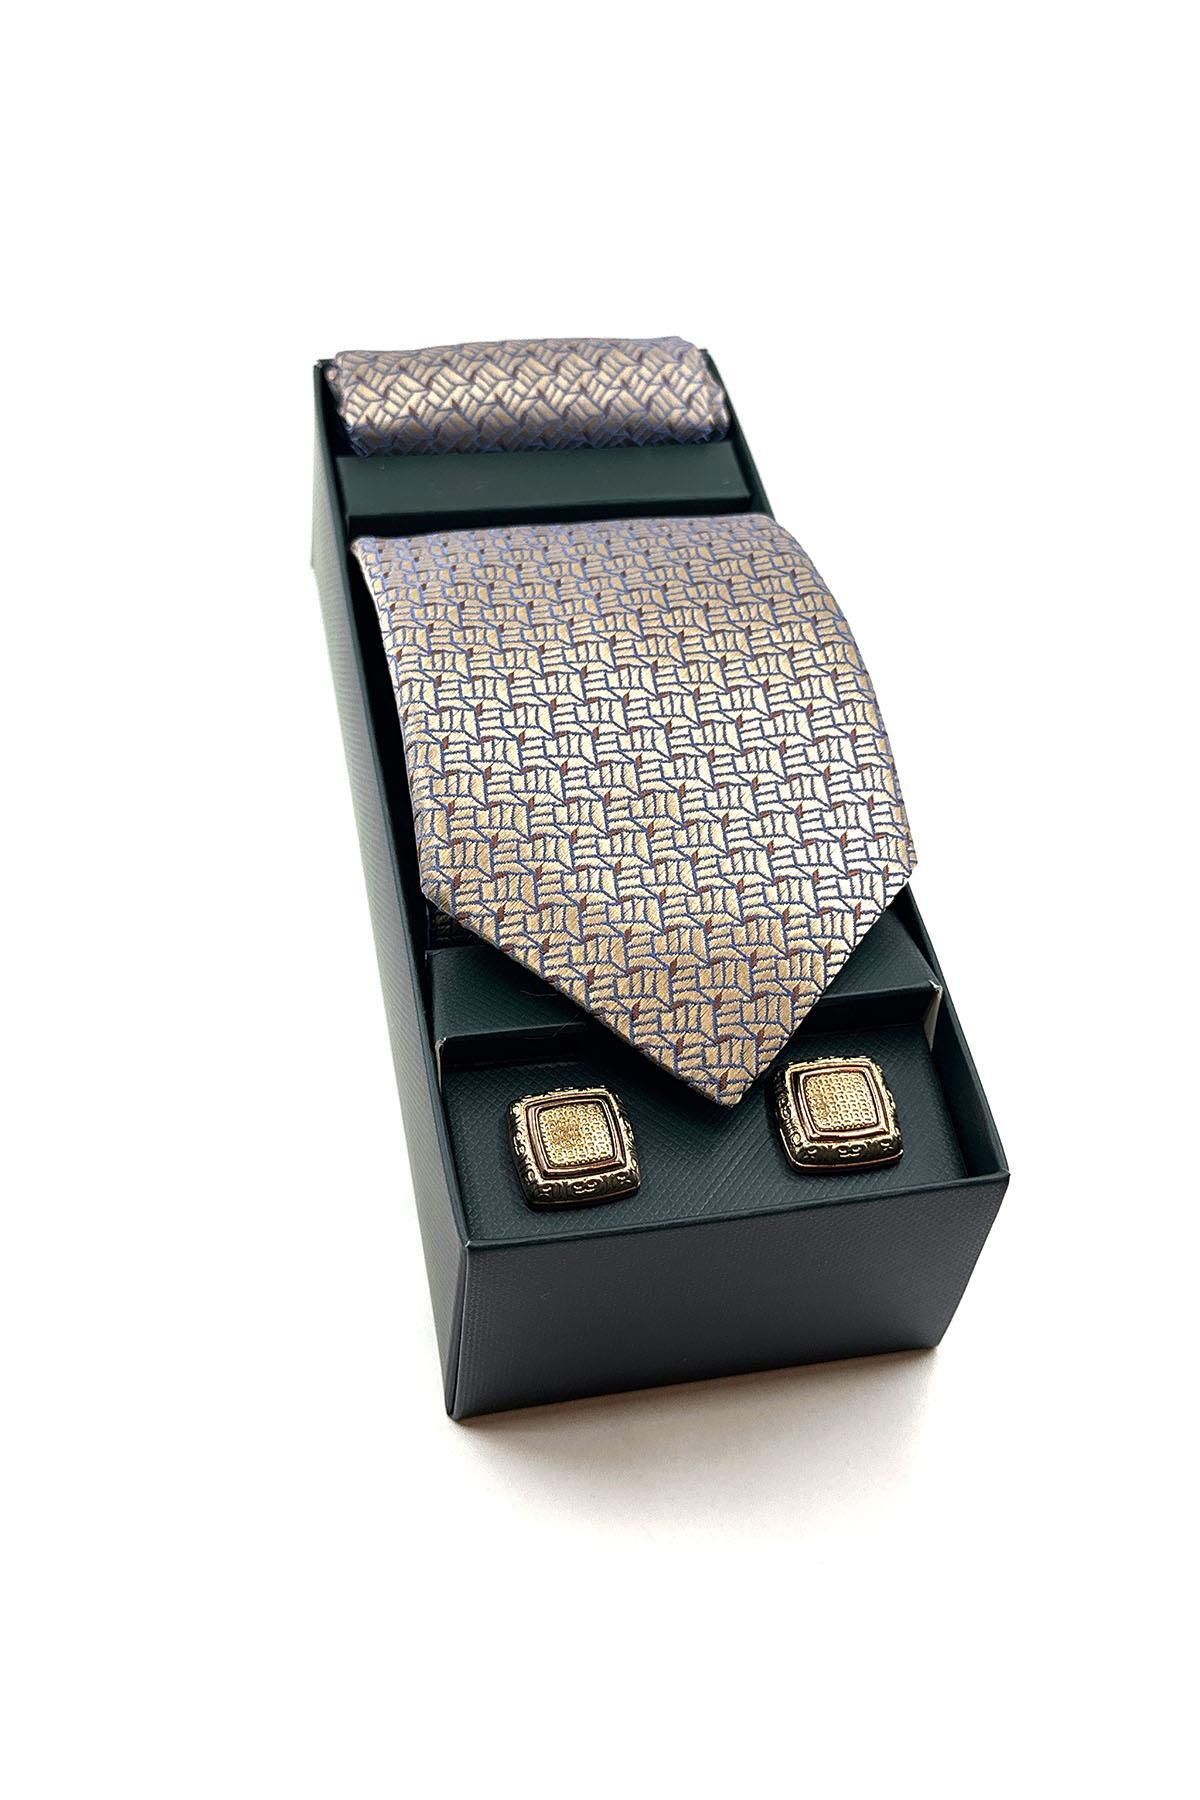 La Pescara Bej Mendilli Kravat Altın Kol Düğmesi Hediye Seti OS550